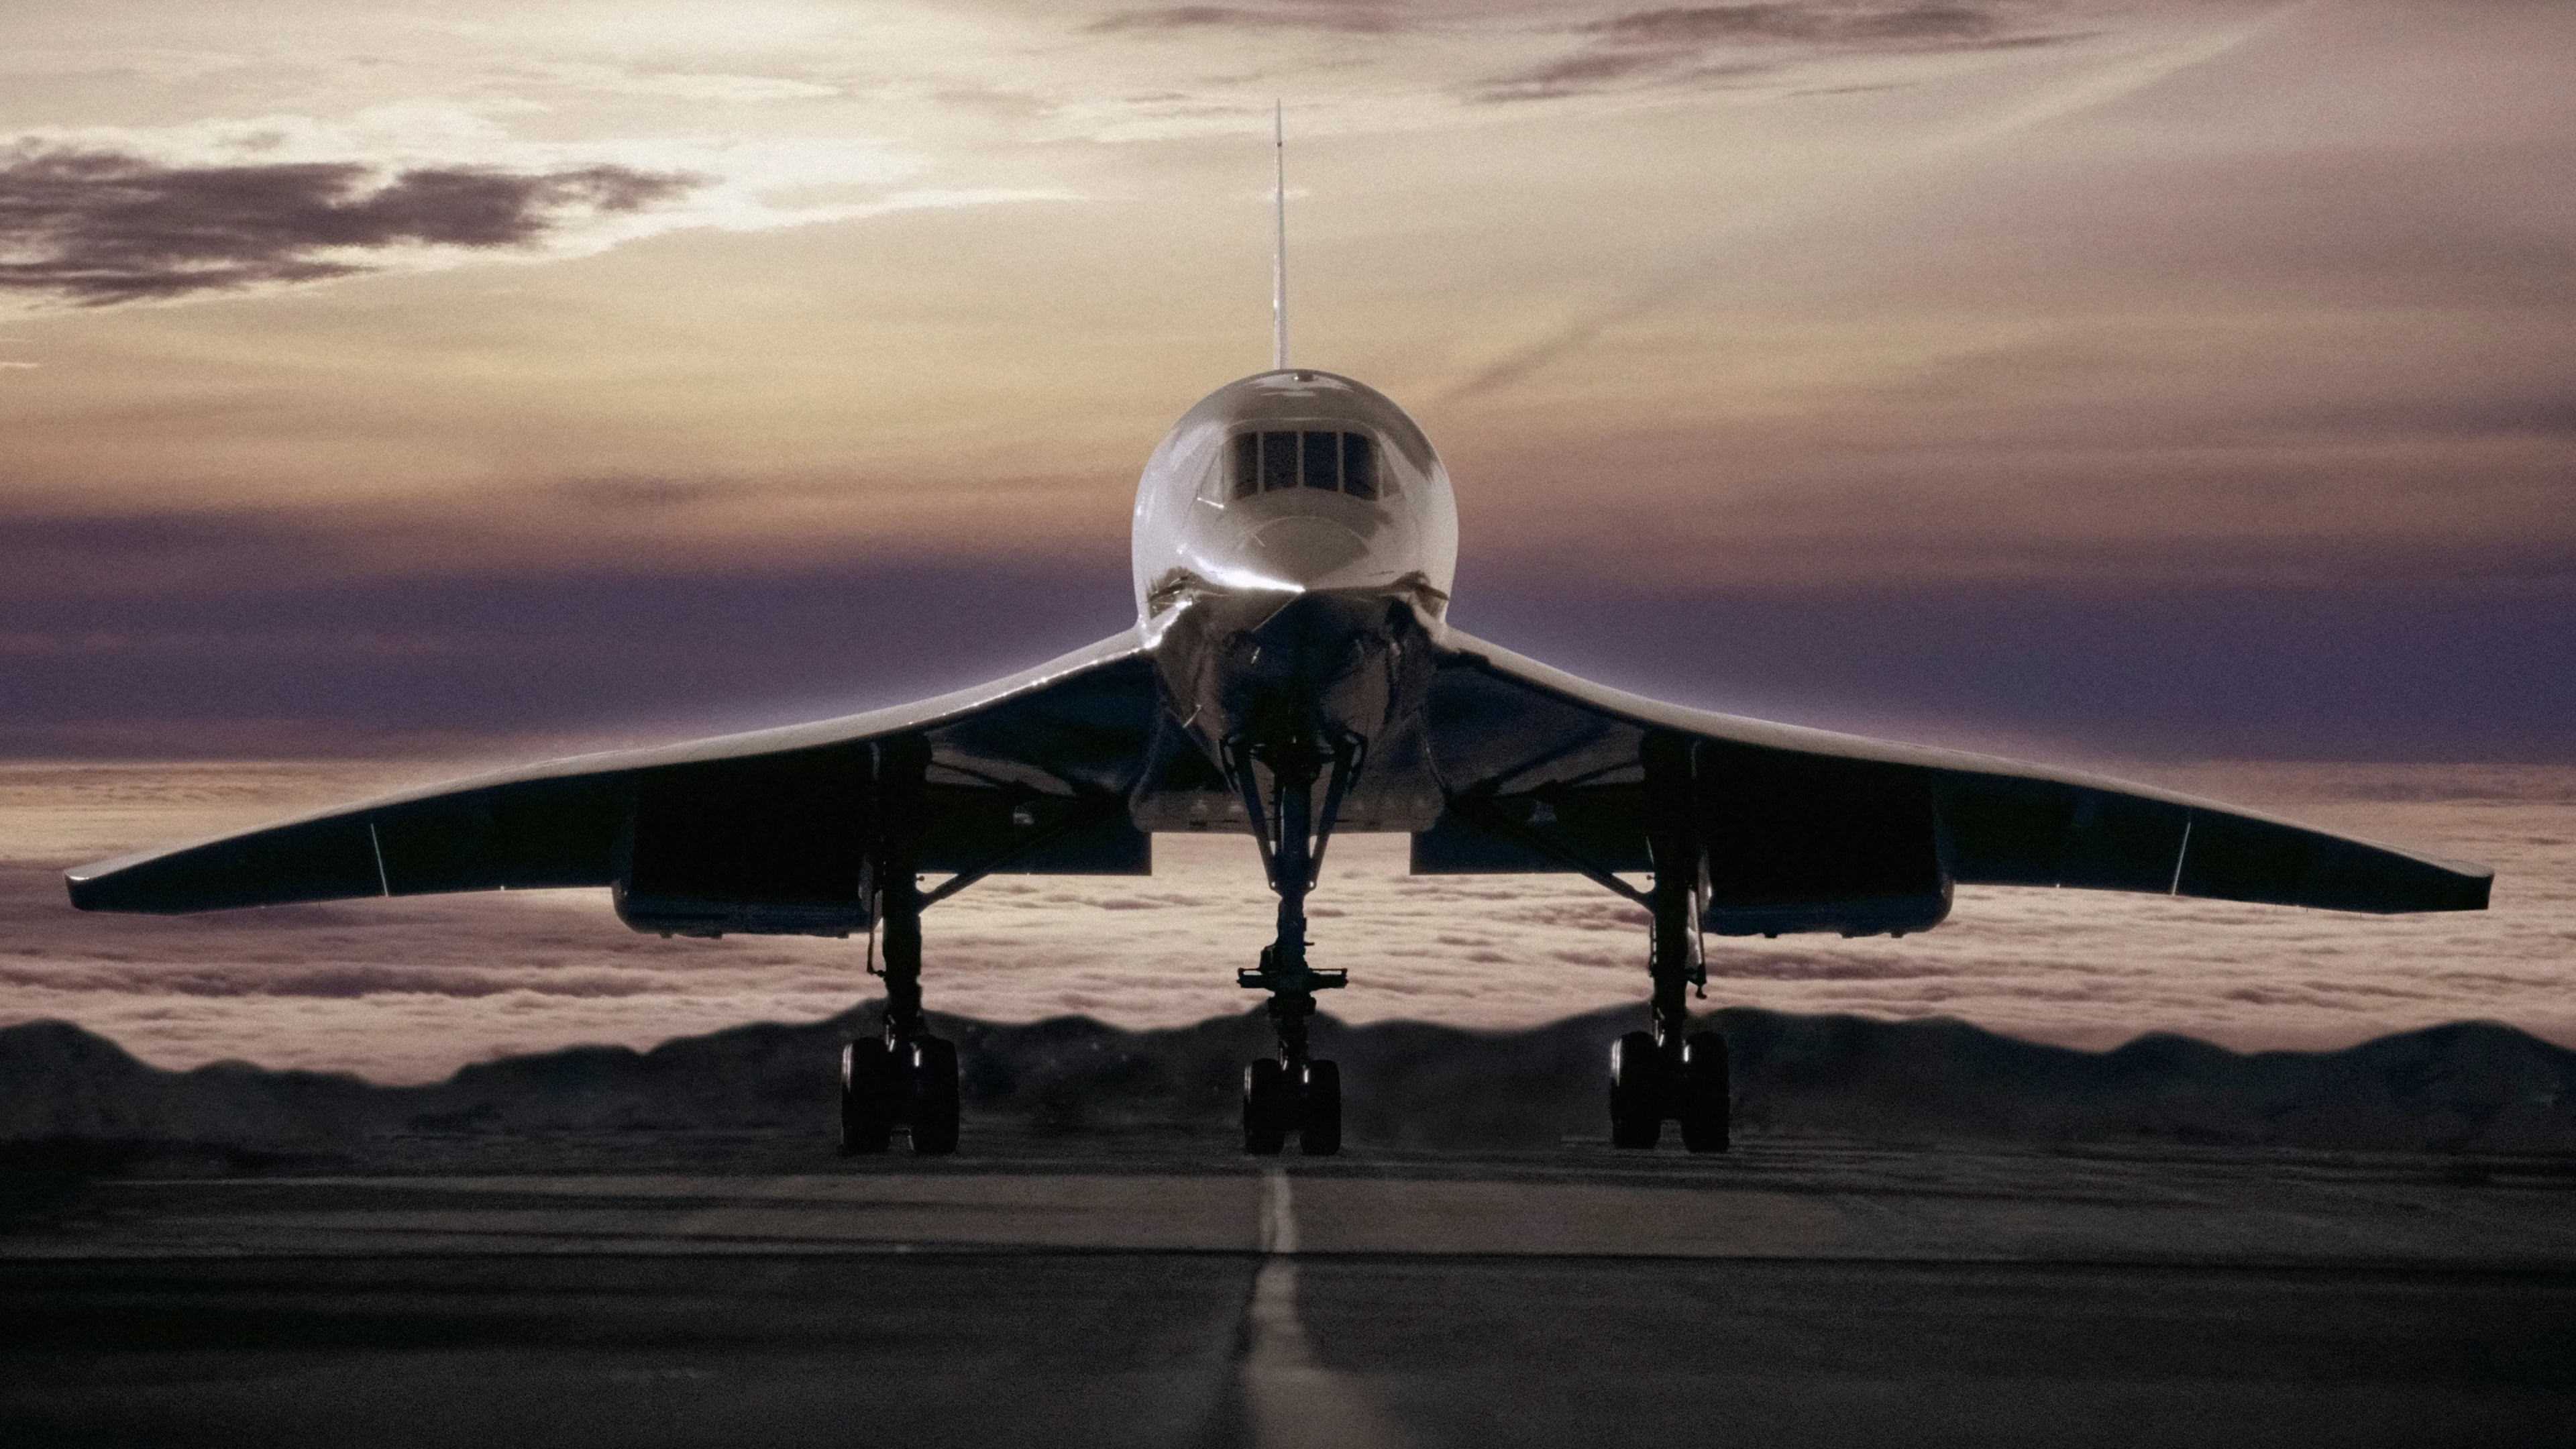 Включите сверхзвук. Придут ли на смену Concorde и Ту-144 новые реактивные пассажирские самолеты